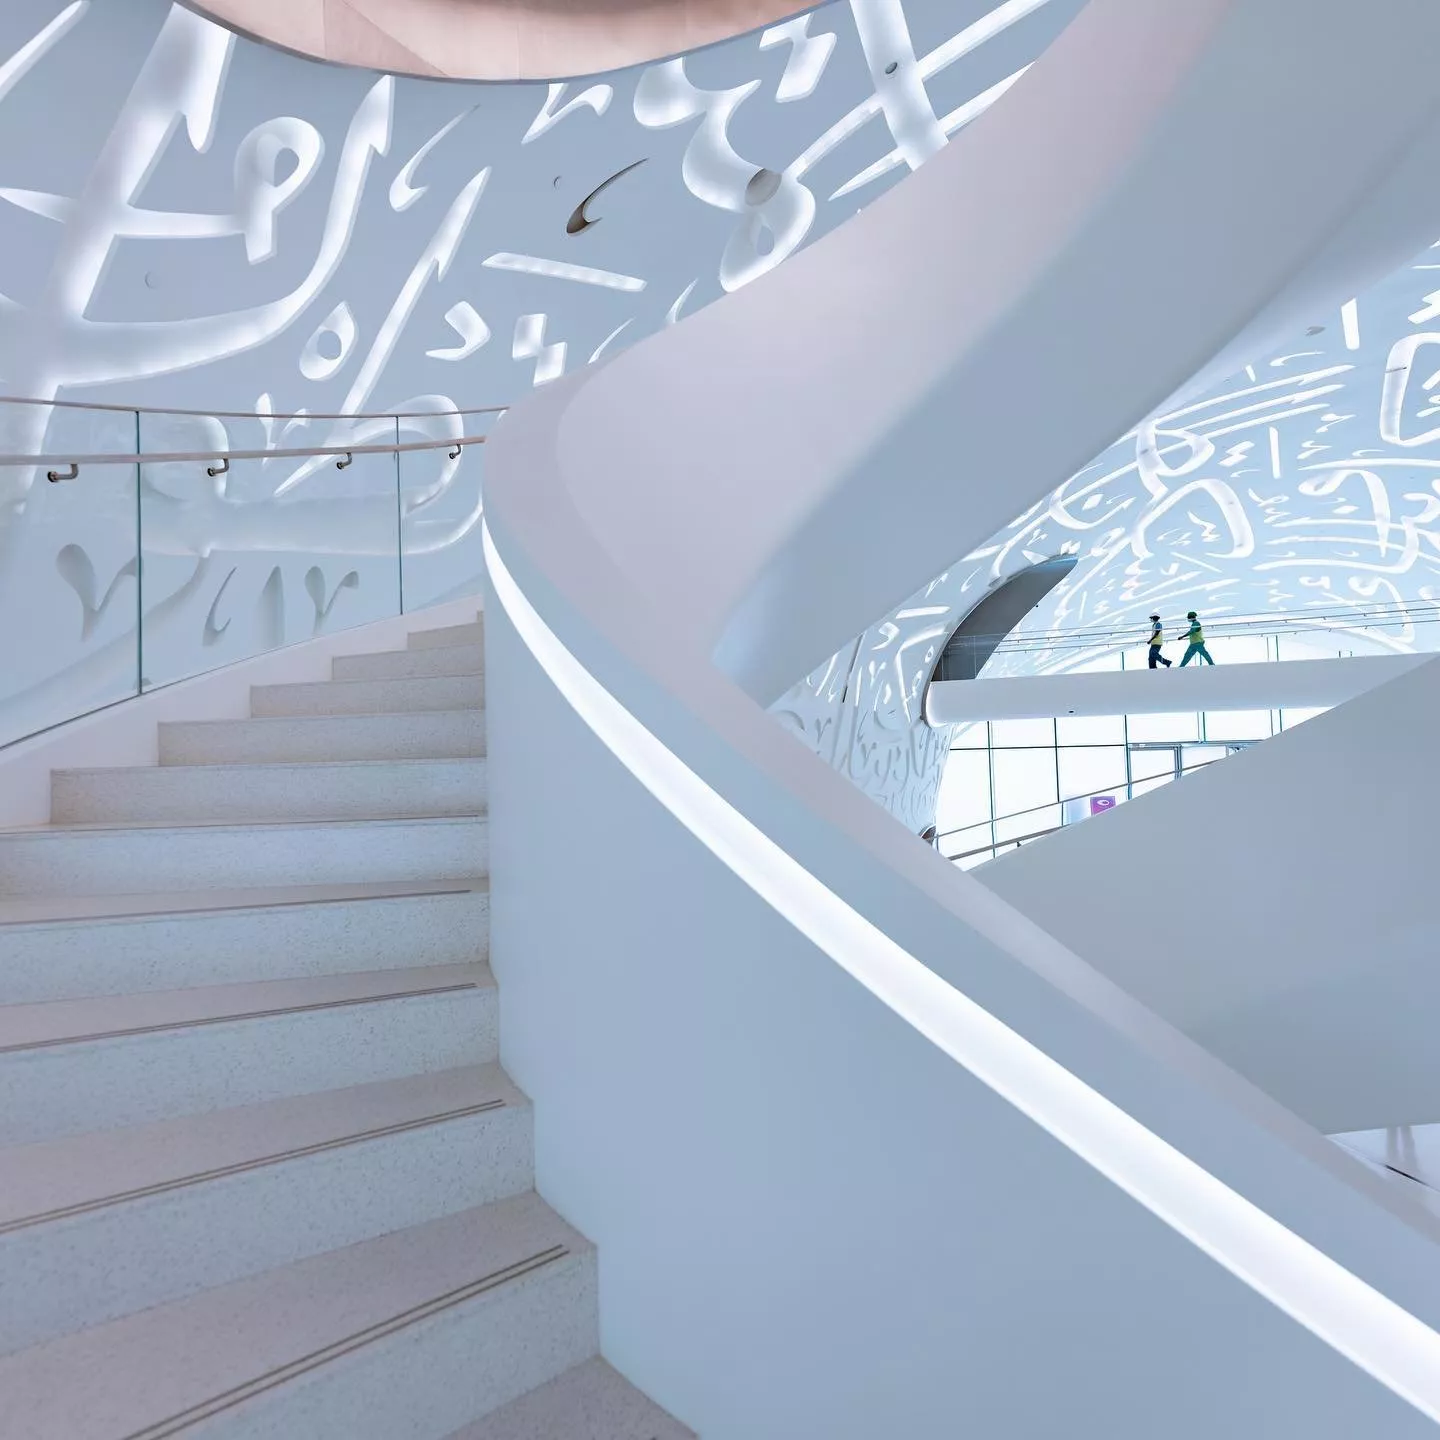 إنجاز جديد لدولة الامارات: سيتمّ إطلاق متحف المستقبل الأجمل عالمياً في دبي